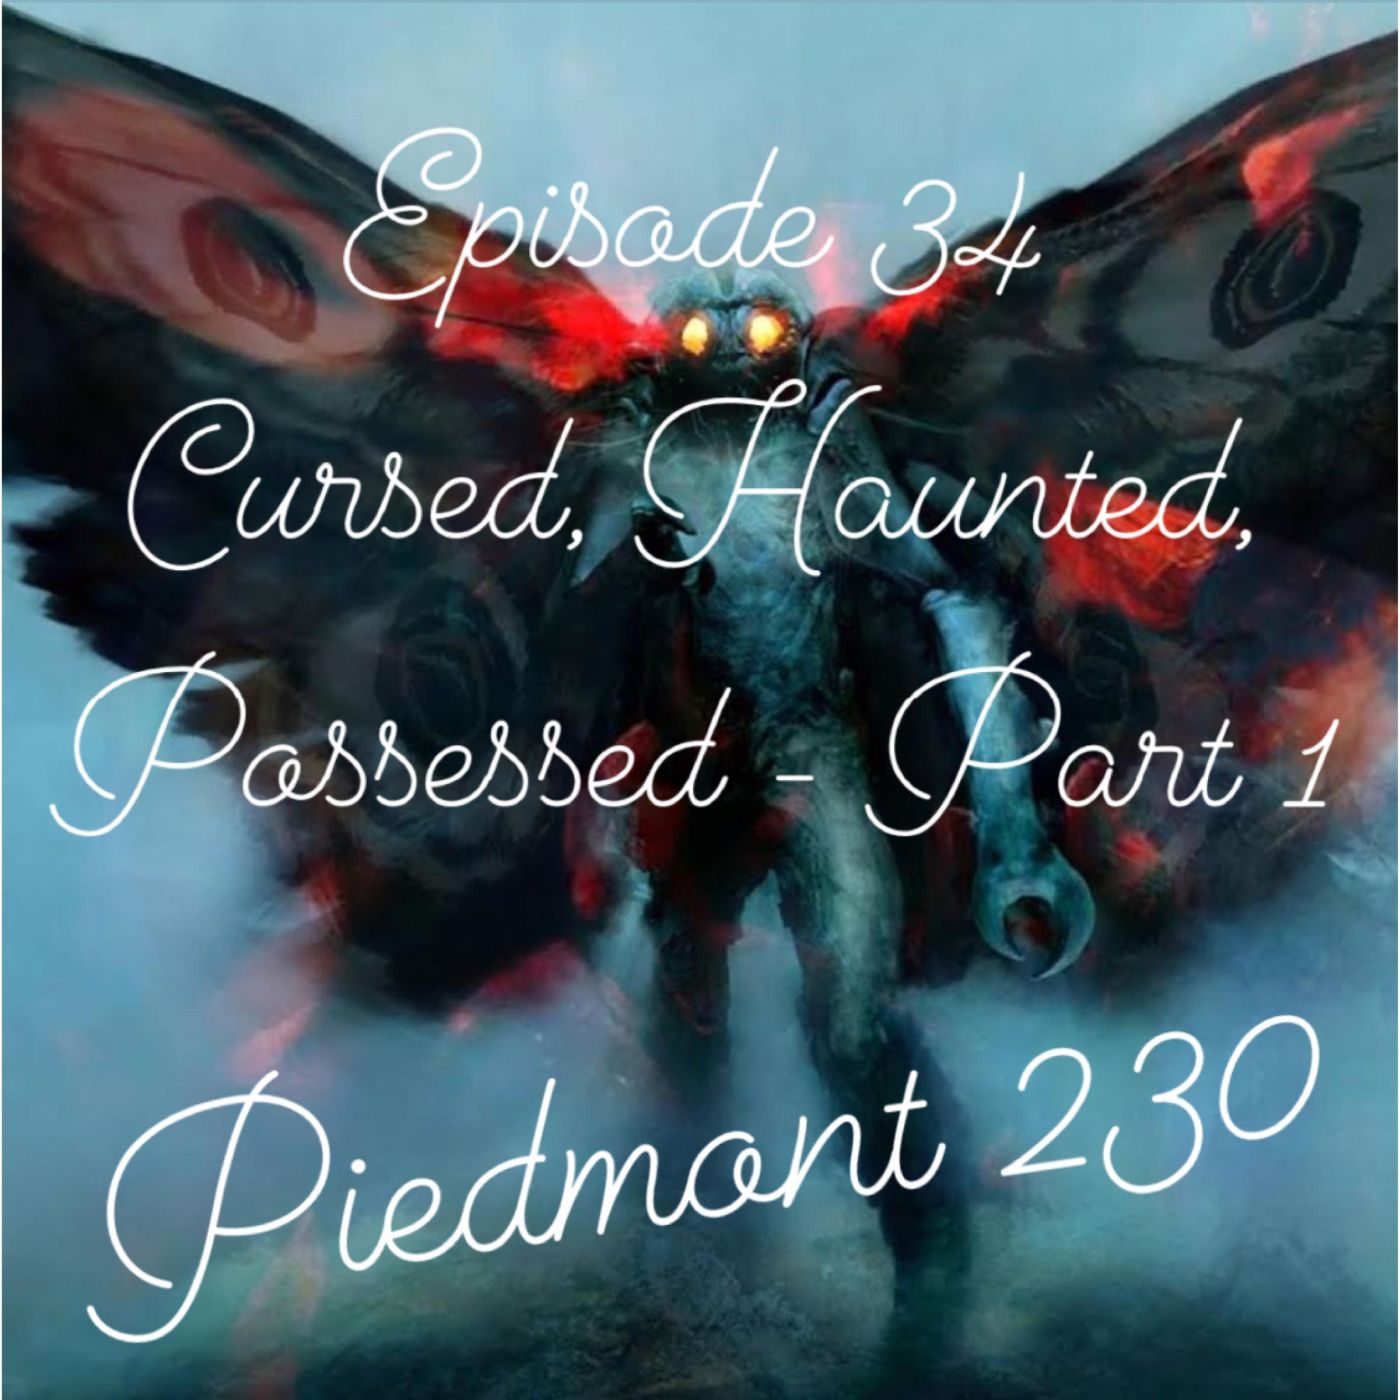 34. Cursed, Haunted, Possessed - Part 1 - Piedmont 230 hero artwork